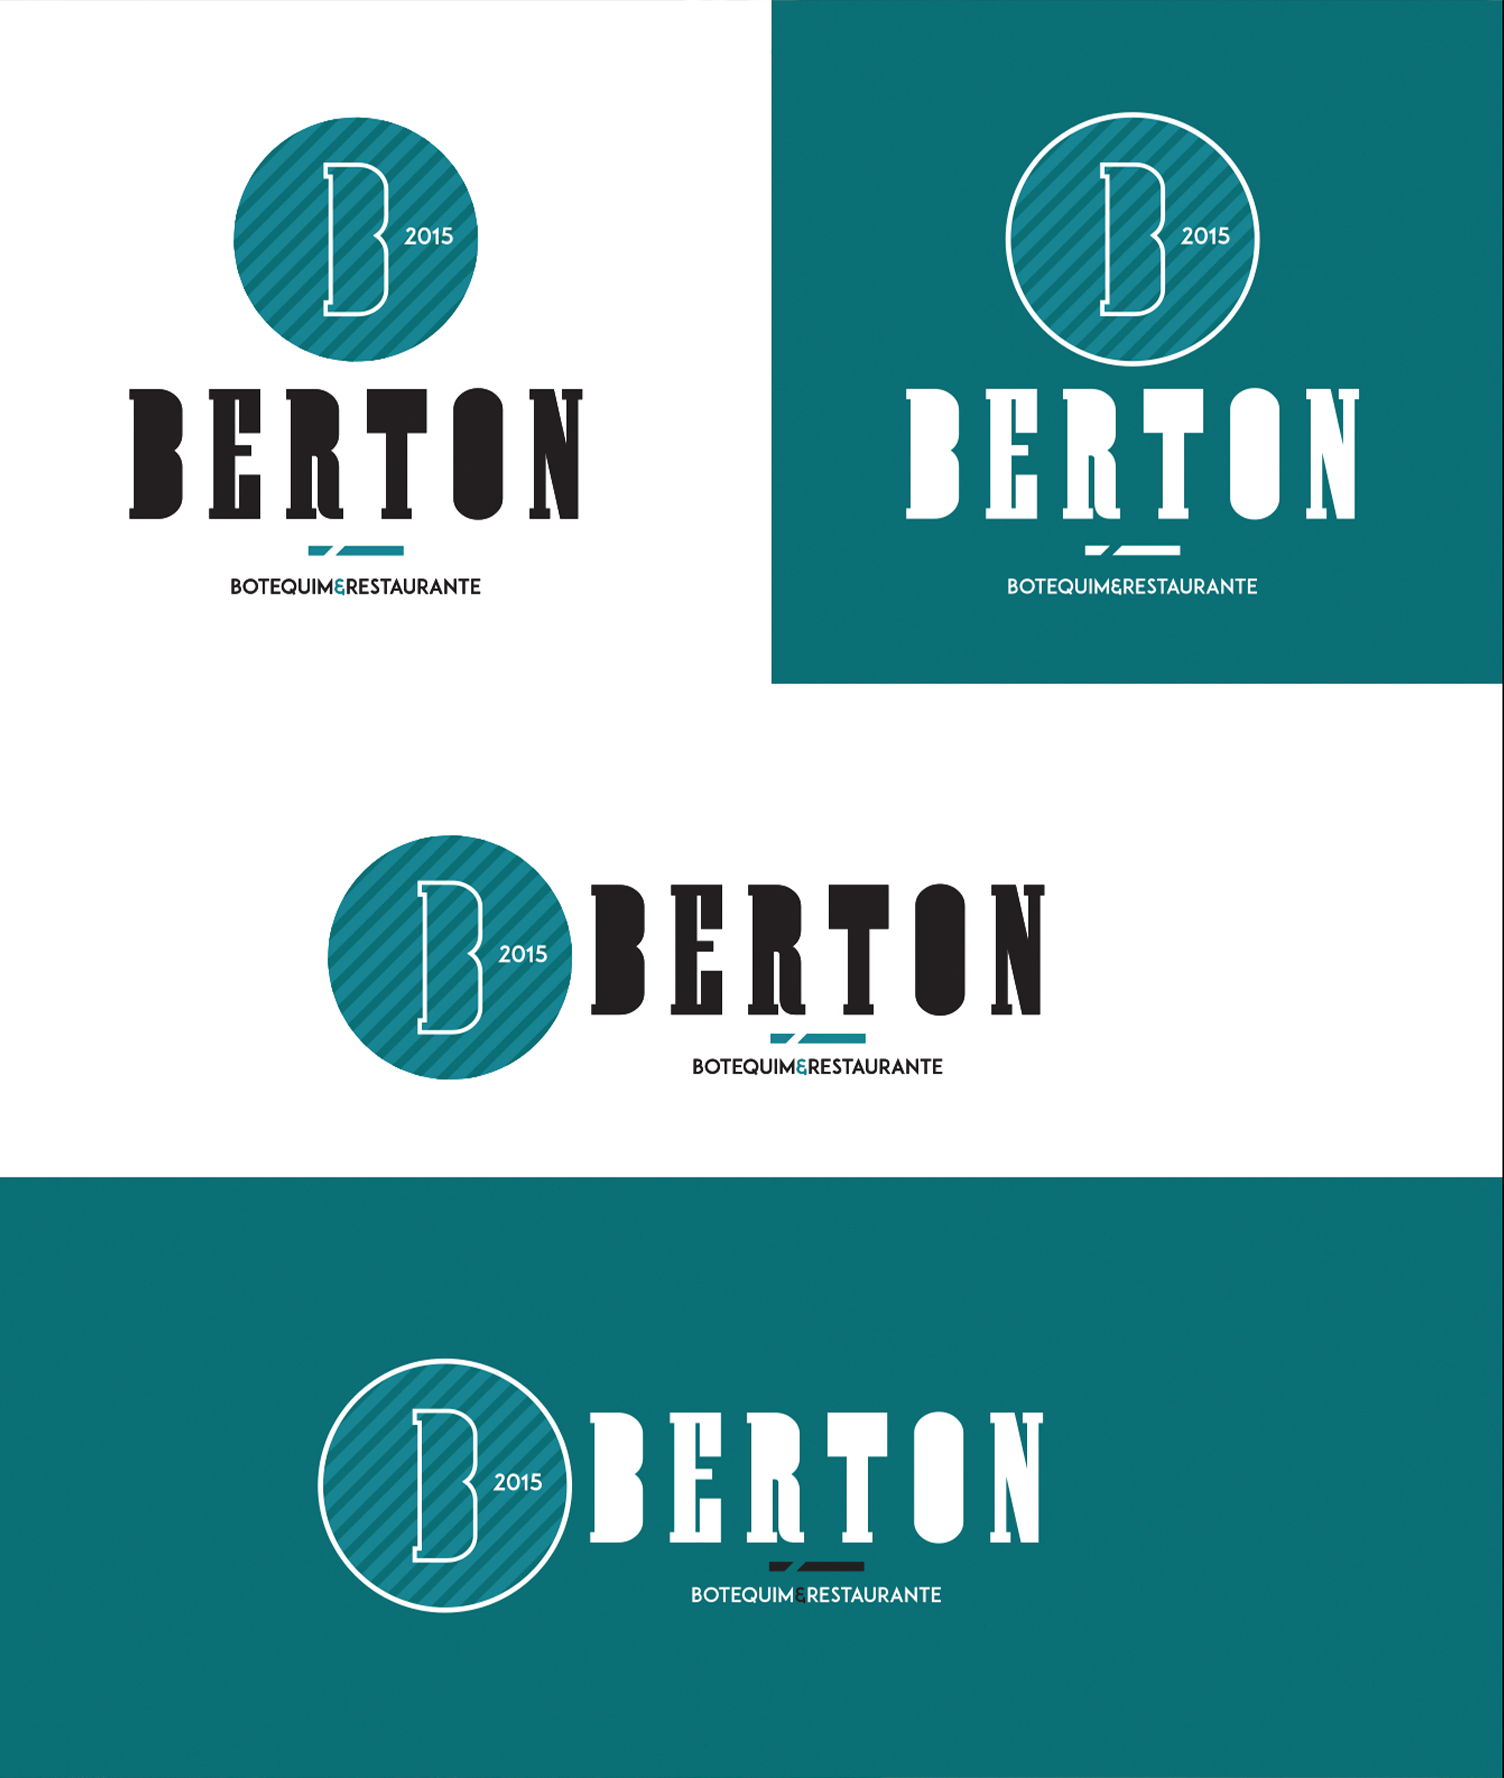 Berton Botequim e Restaurante Design